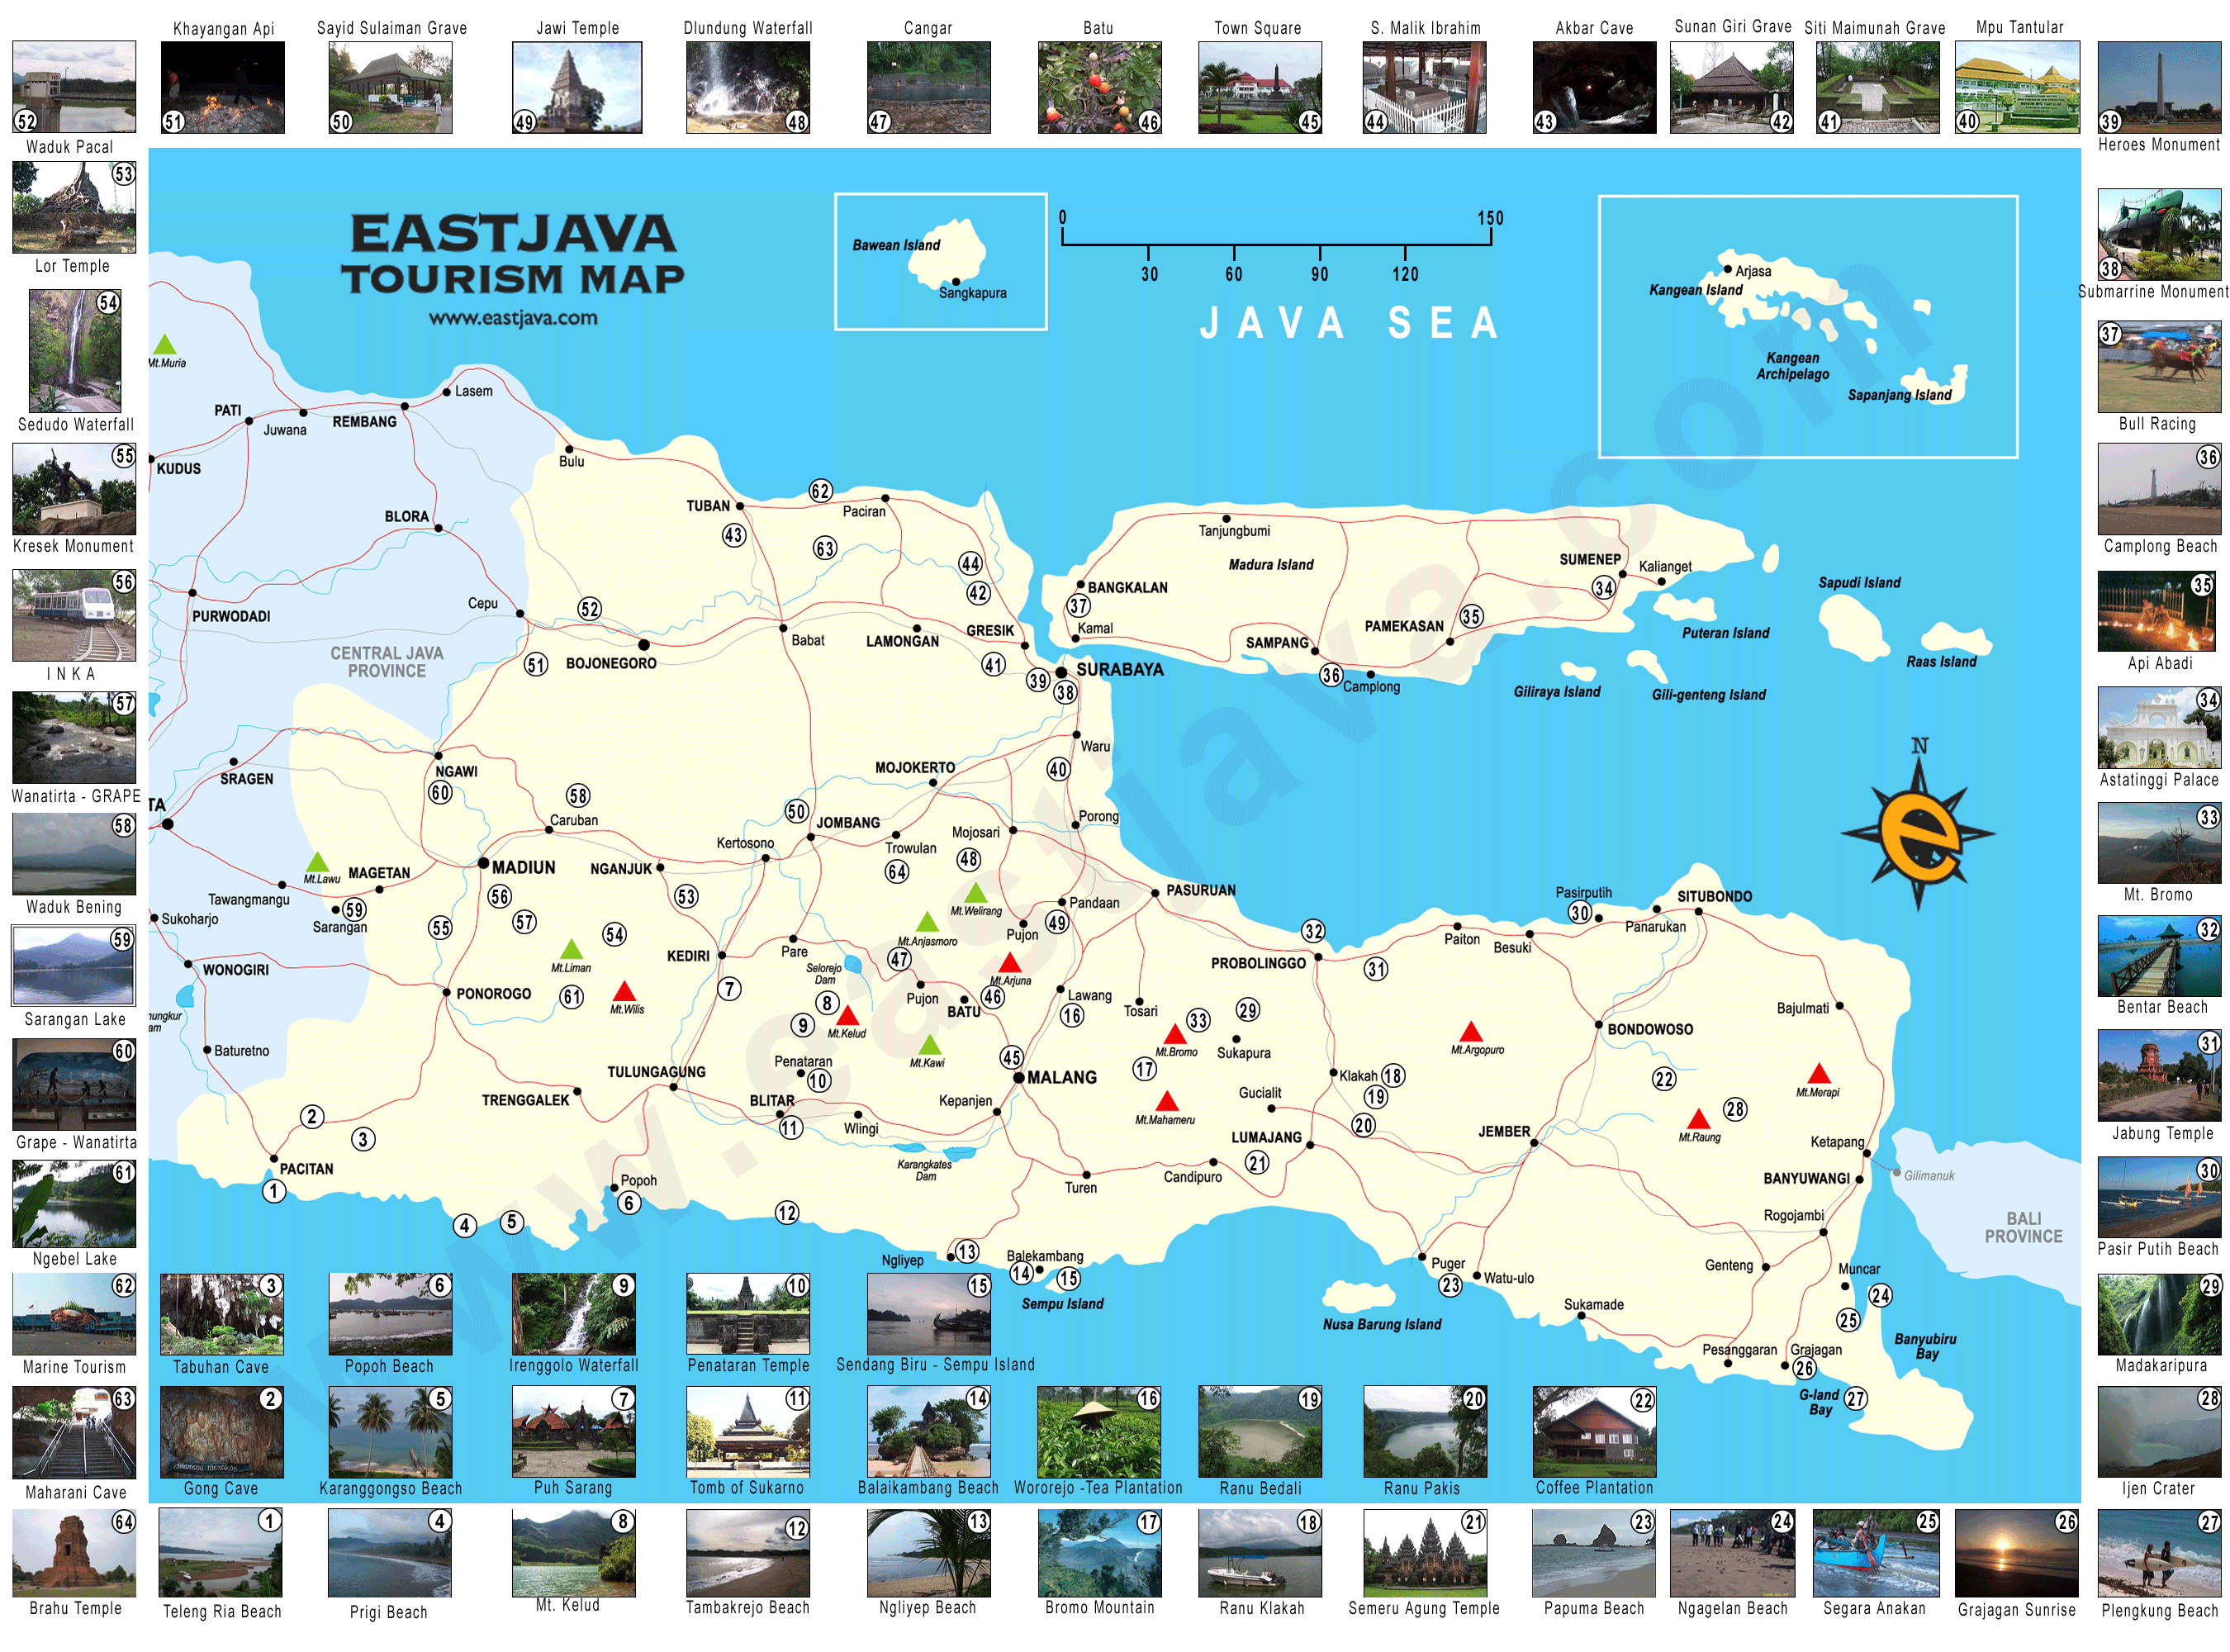 Map of East Java Peta Jawa Timur East Java Tourism Map